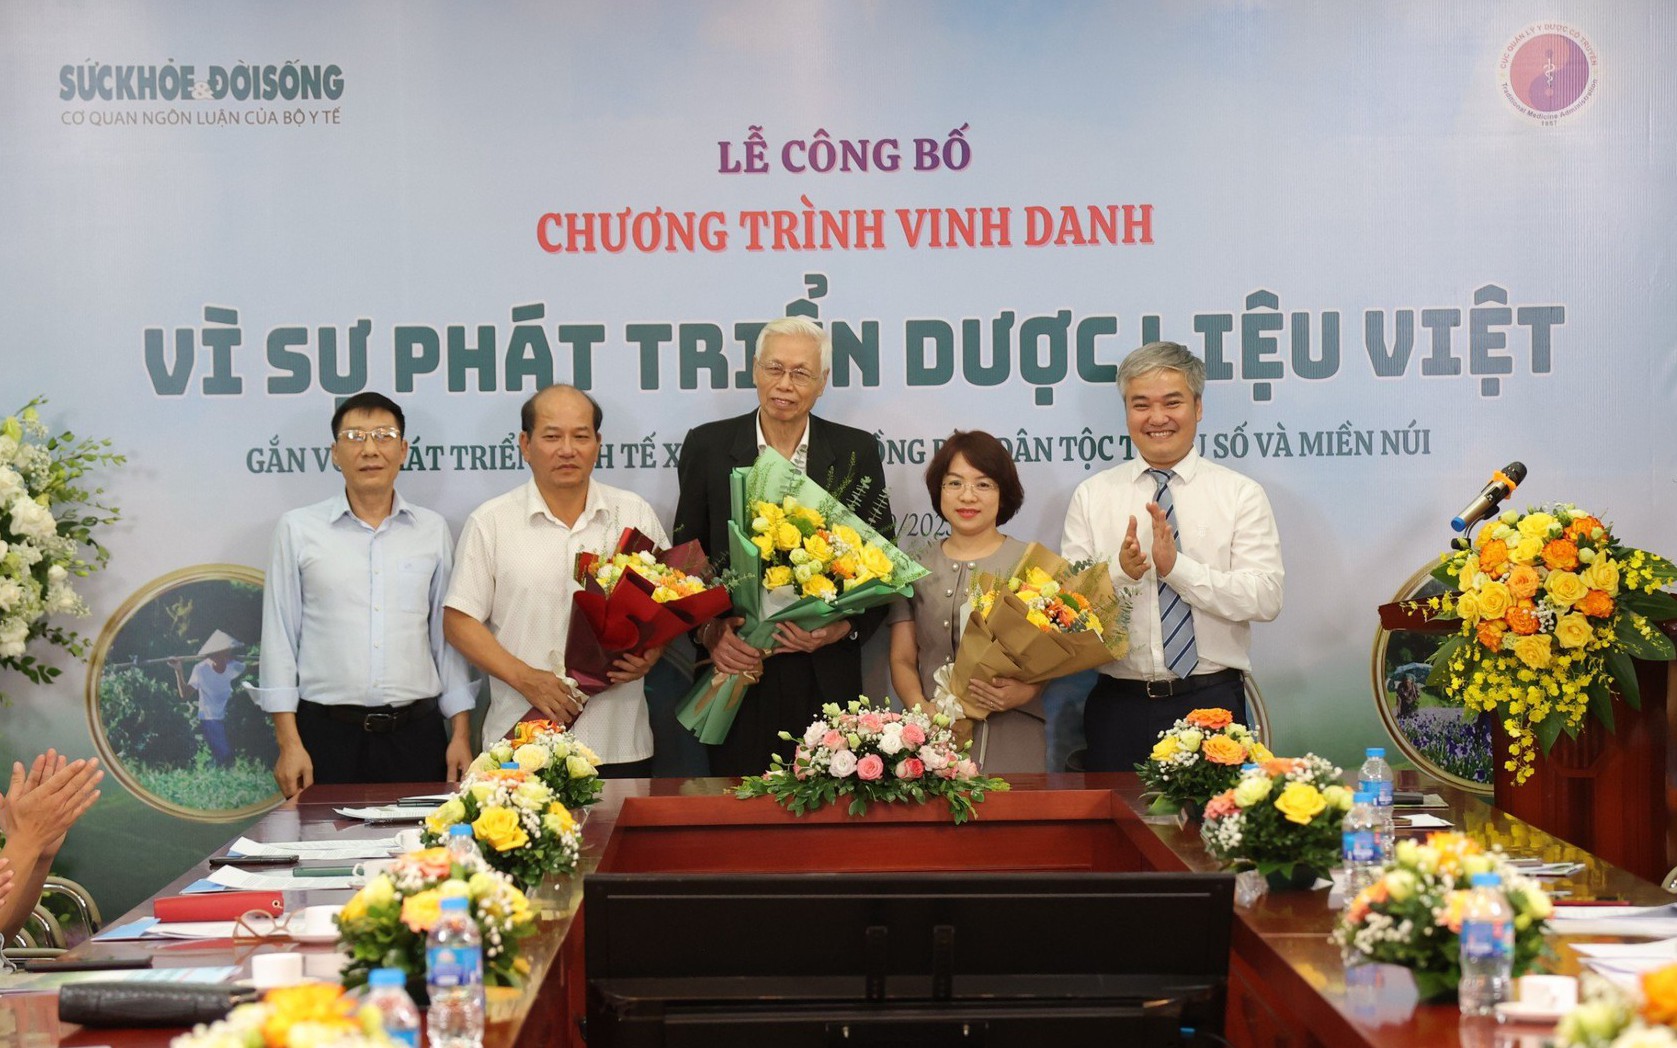 Công bố Chương trình &quot;Vinh danh vì sự phát triển dược liệu Việt gắn với phát triển KT-XH ĐBDTTSMN&quot;